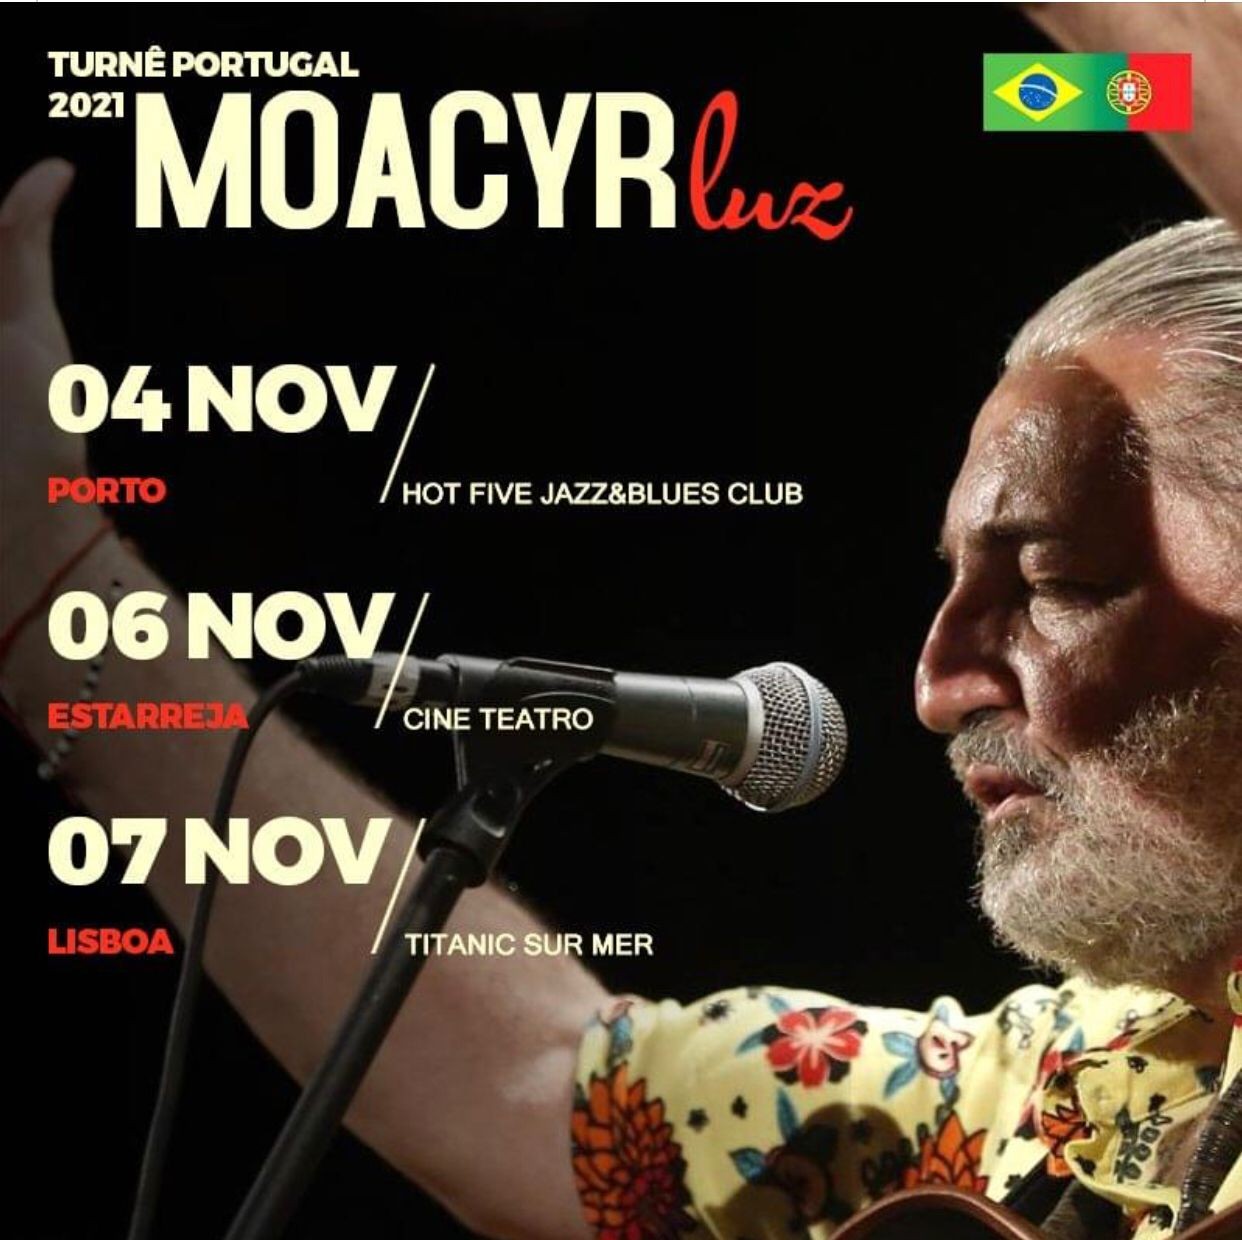 Material de divulgação da turnê de Moacyr Luz em Portugal